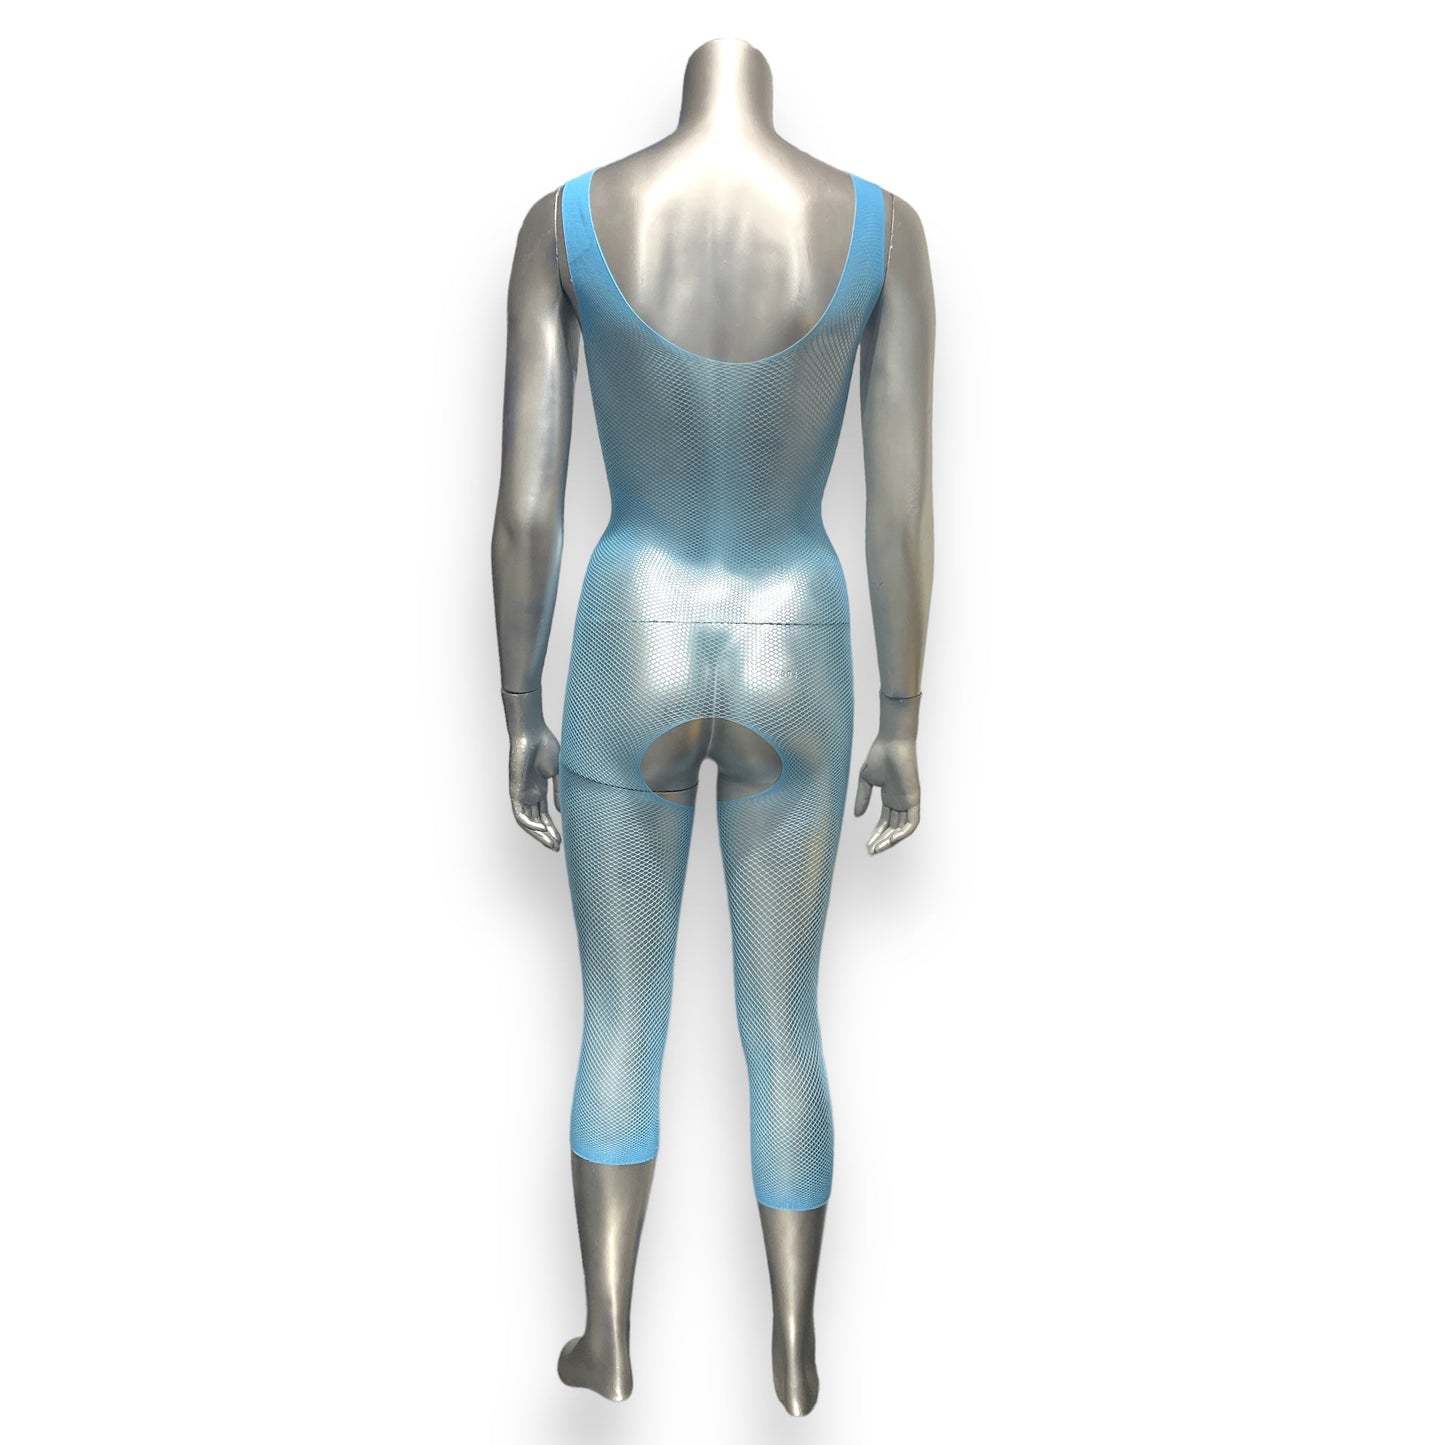 Verleidelijke Sexy Body Stocking - Blauw - One Size Fits Most - Bulk Aanbieding